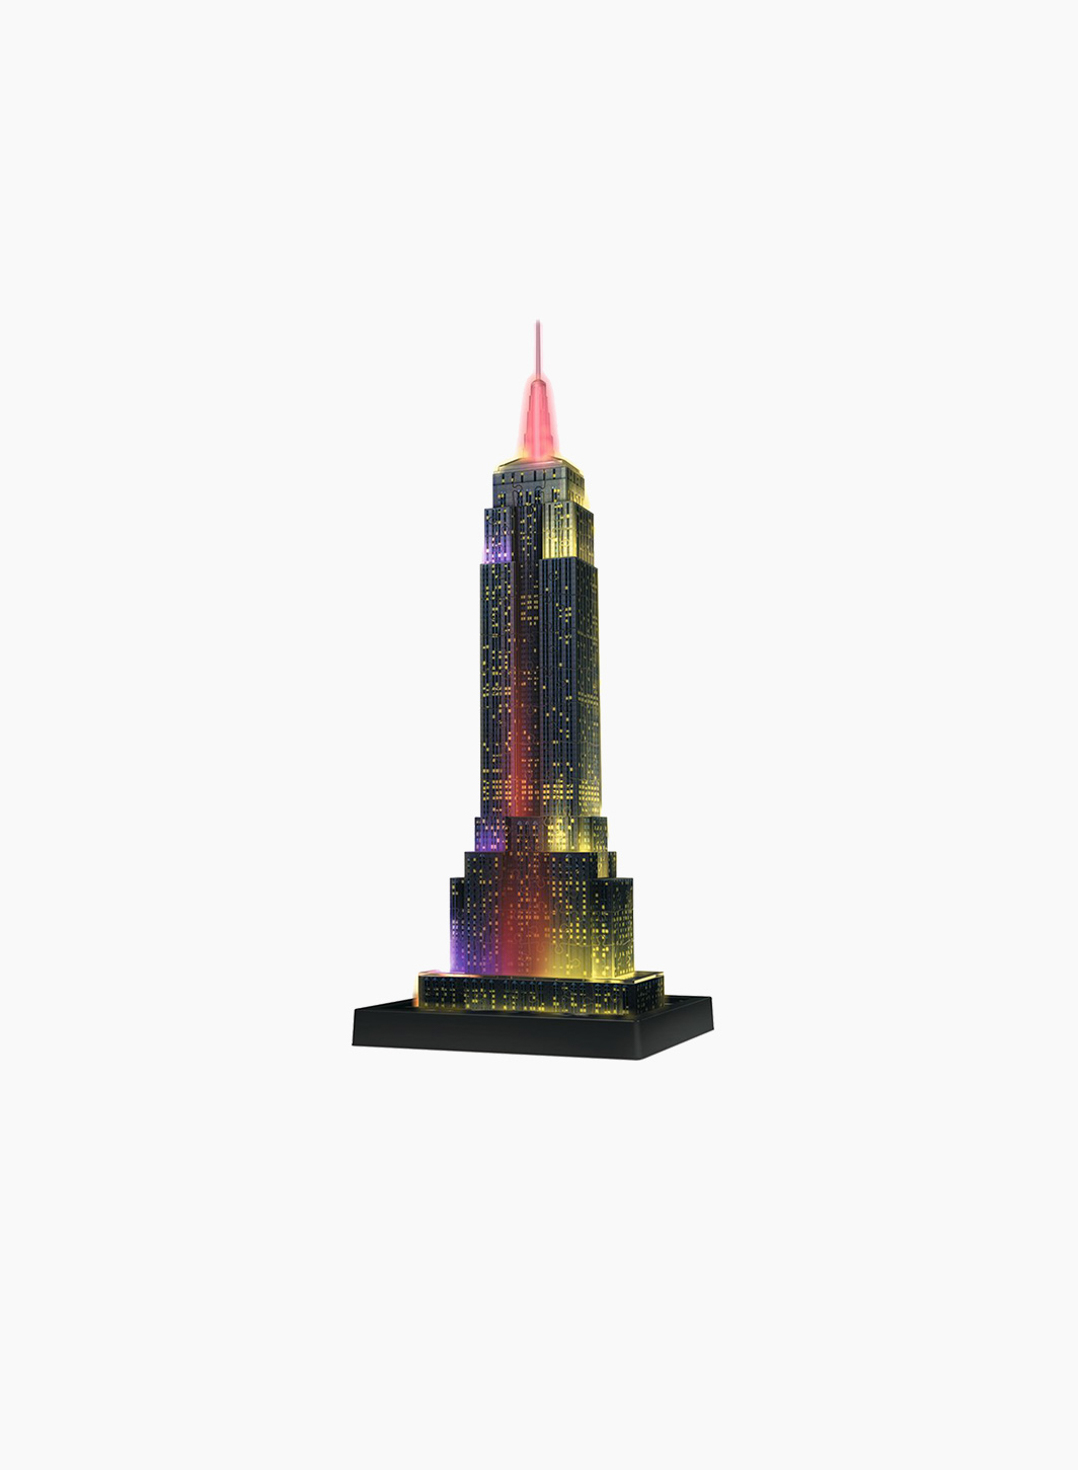 Ravensburger 3D Puzzle Empire State Building 216p